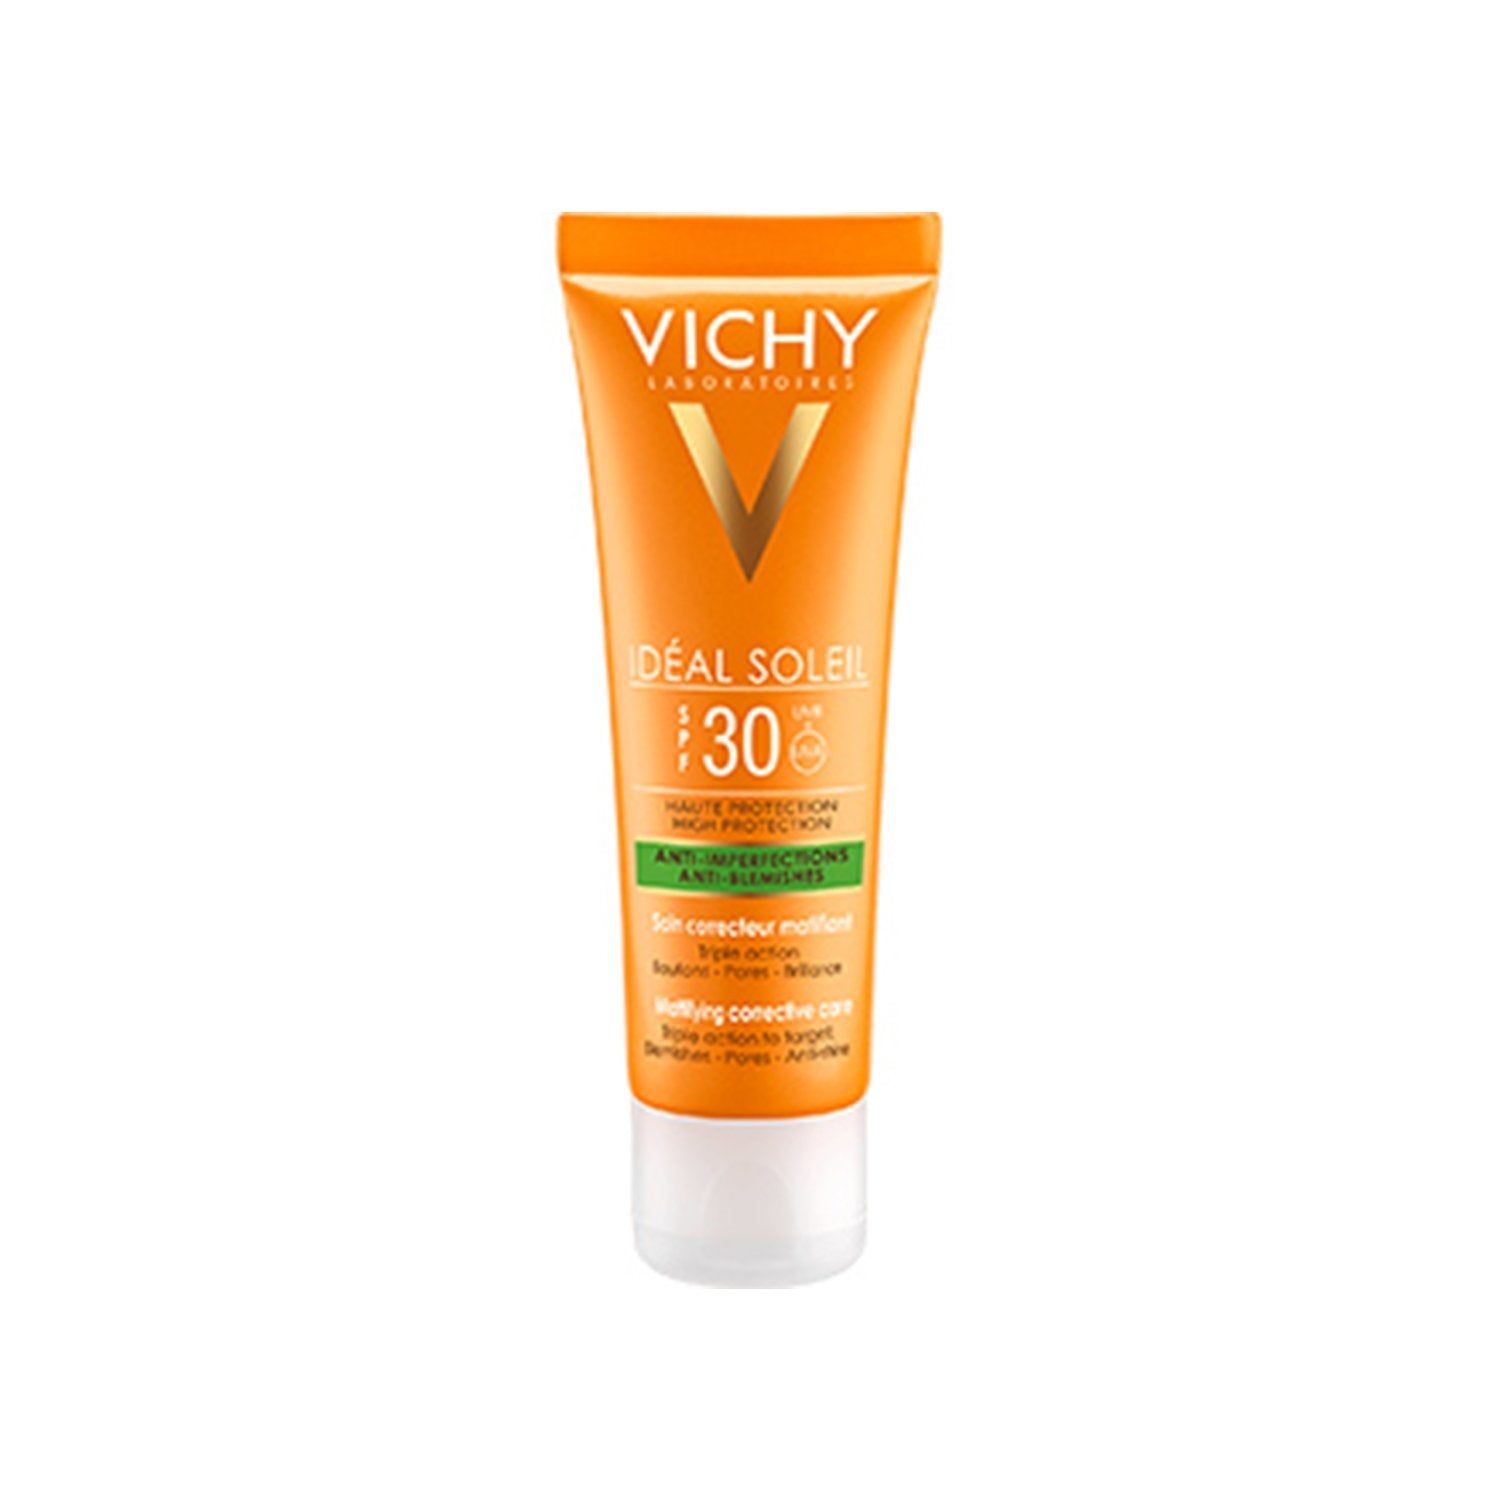 Vichy Ideal Soleil Anti-acne Ip30 Creme 50ml